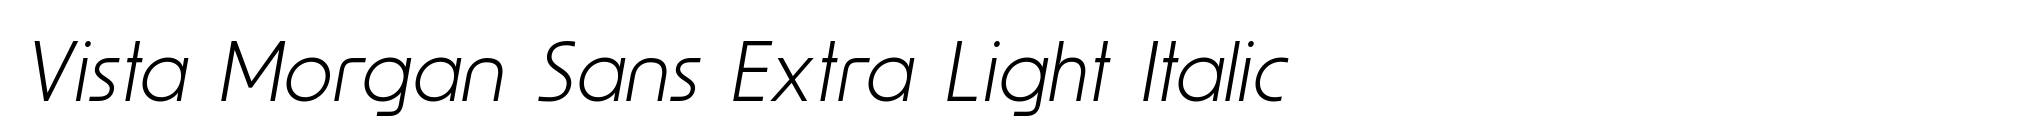 Vista Morgan Sans Extra Light Italic image